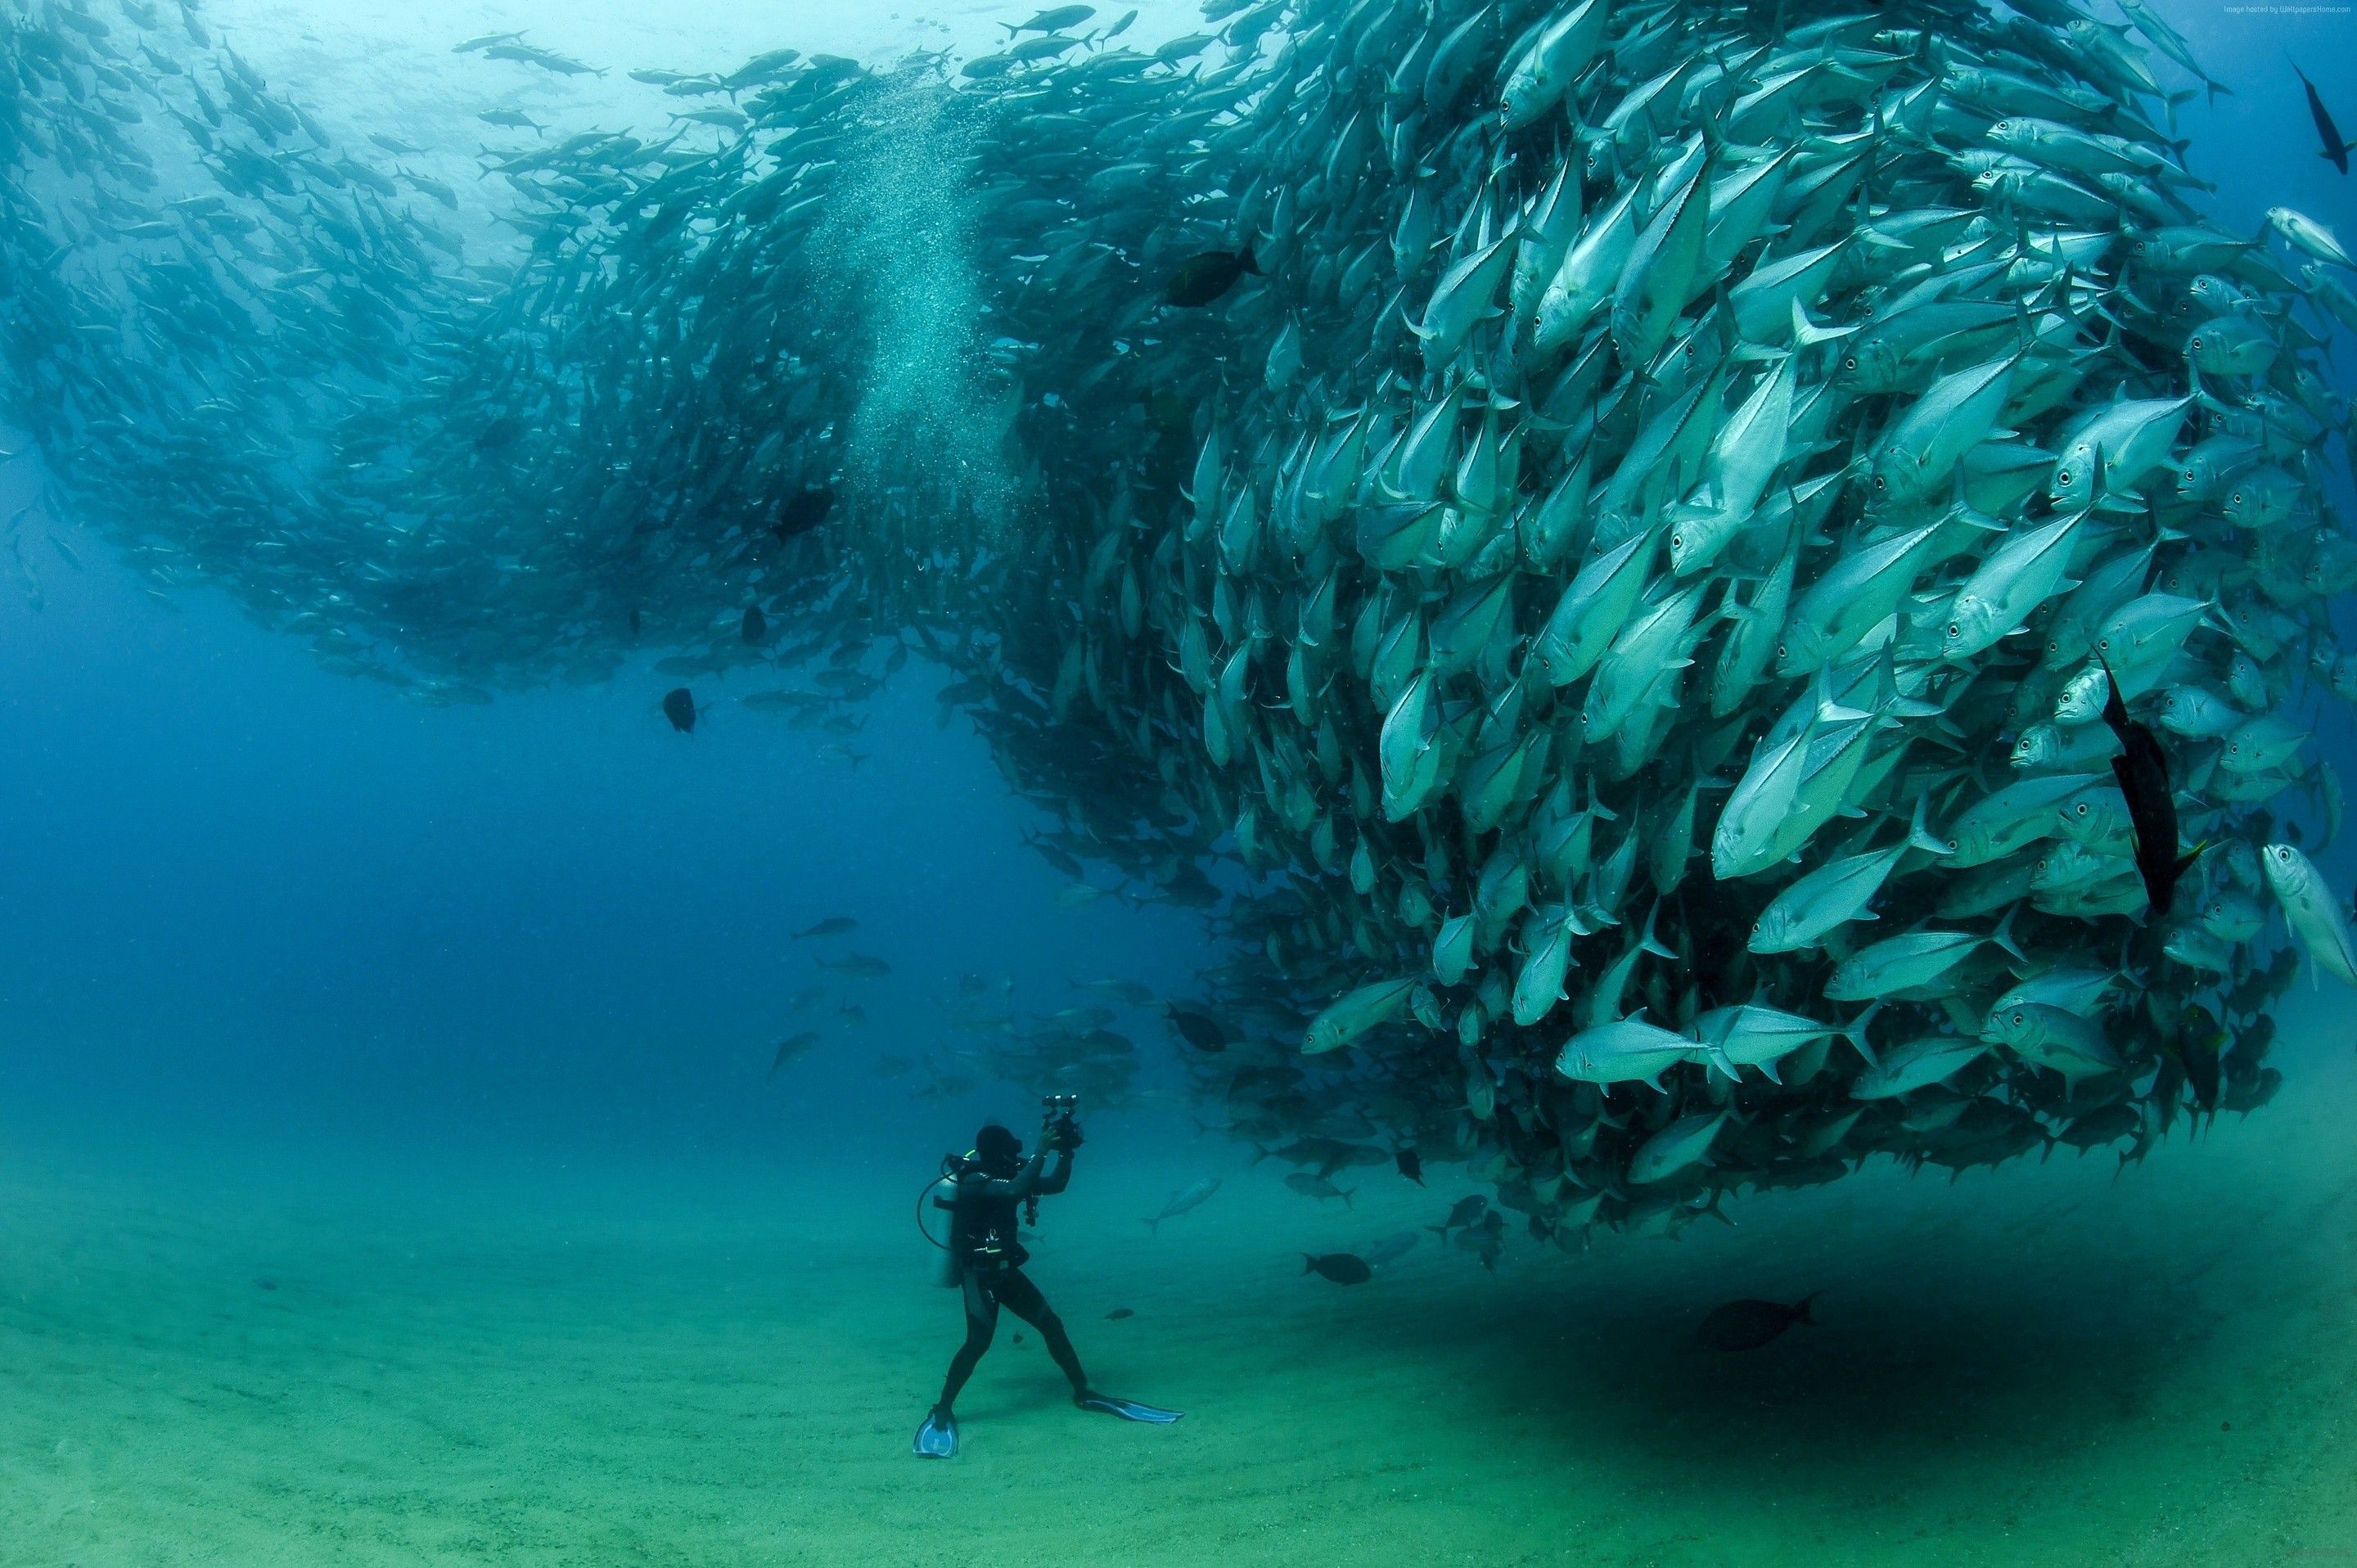 Massive school of fish scuba diver photo